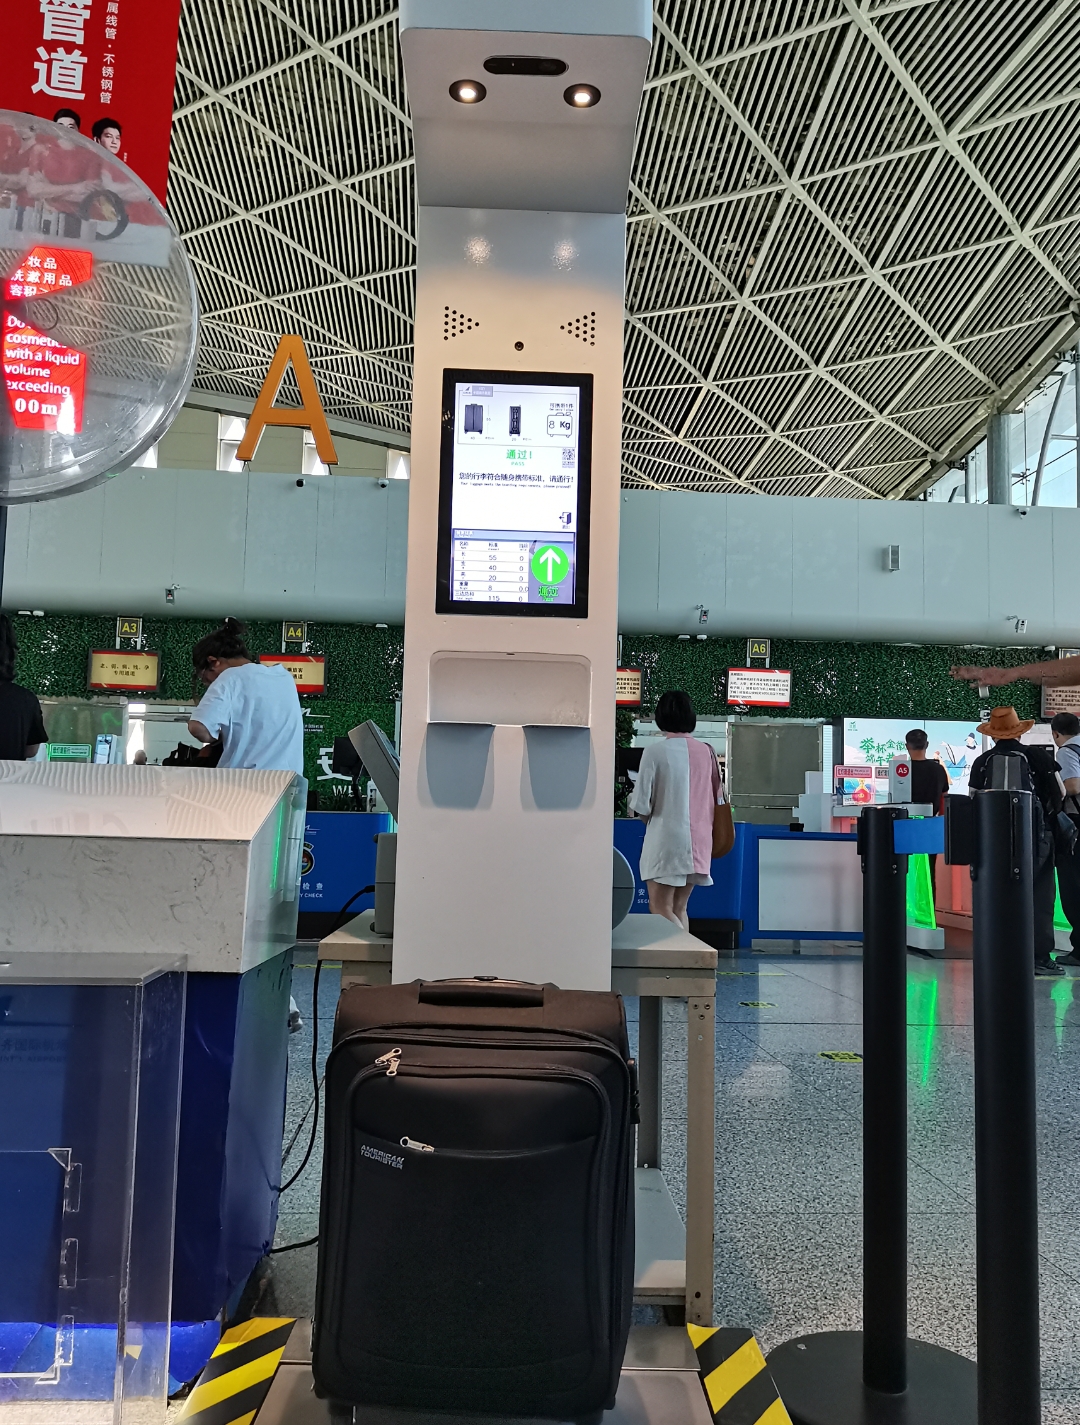 乌鲁木齐国际机场迎来新伙伴   “三超”智能行李检测仪助力提升安检效率